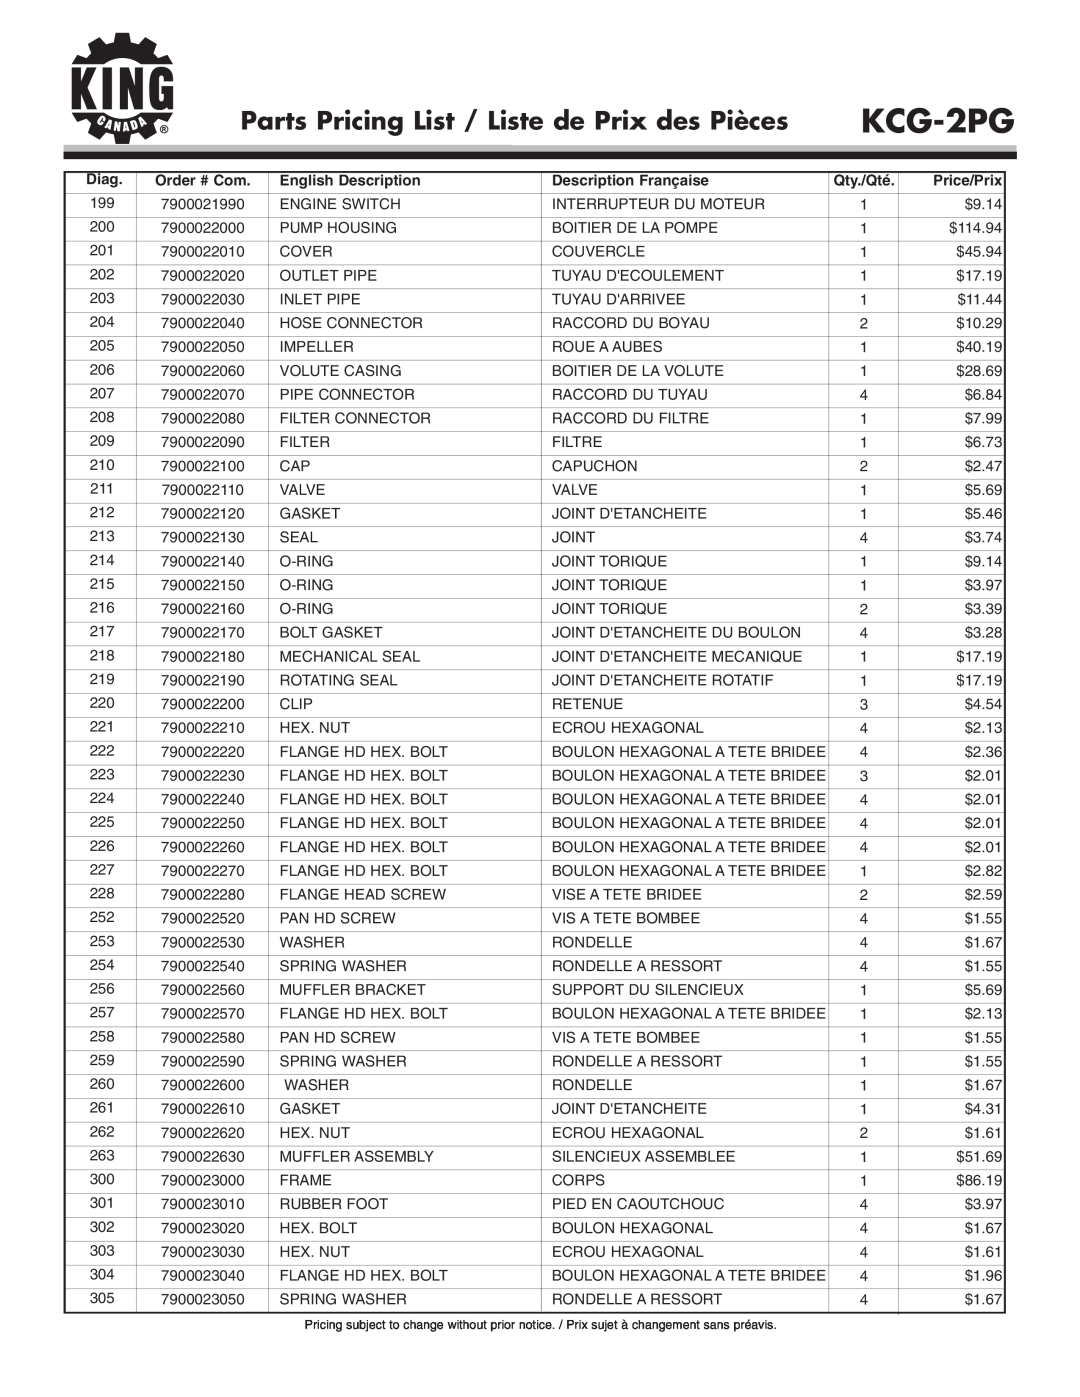 King Canada KCG-2PG Parts Pricing List / Liste de Prix des Pièces, Diag, English Description, Description Française 